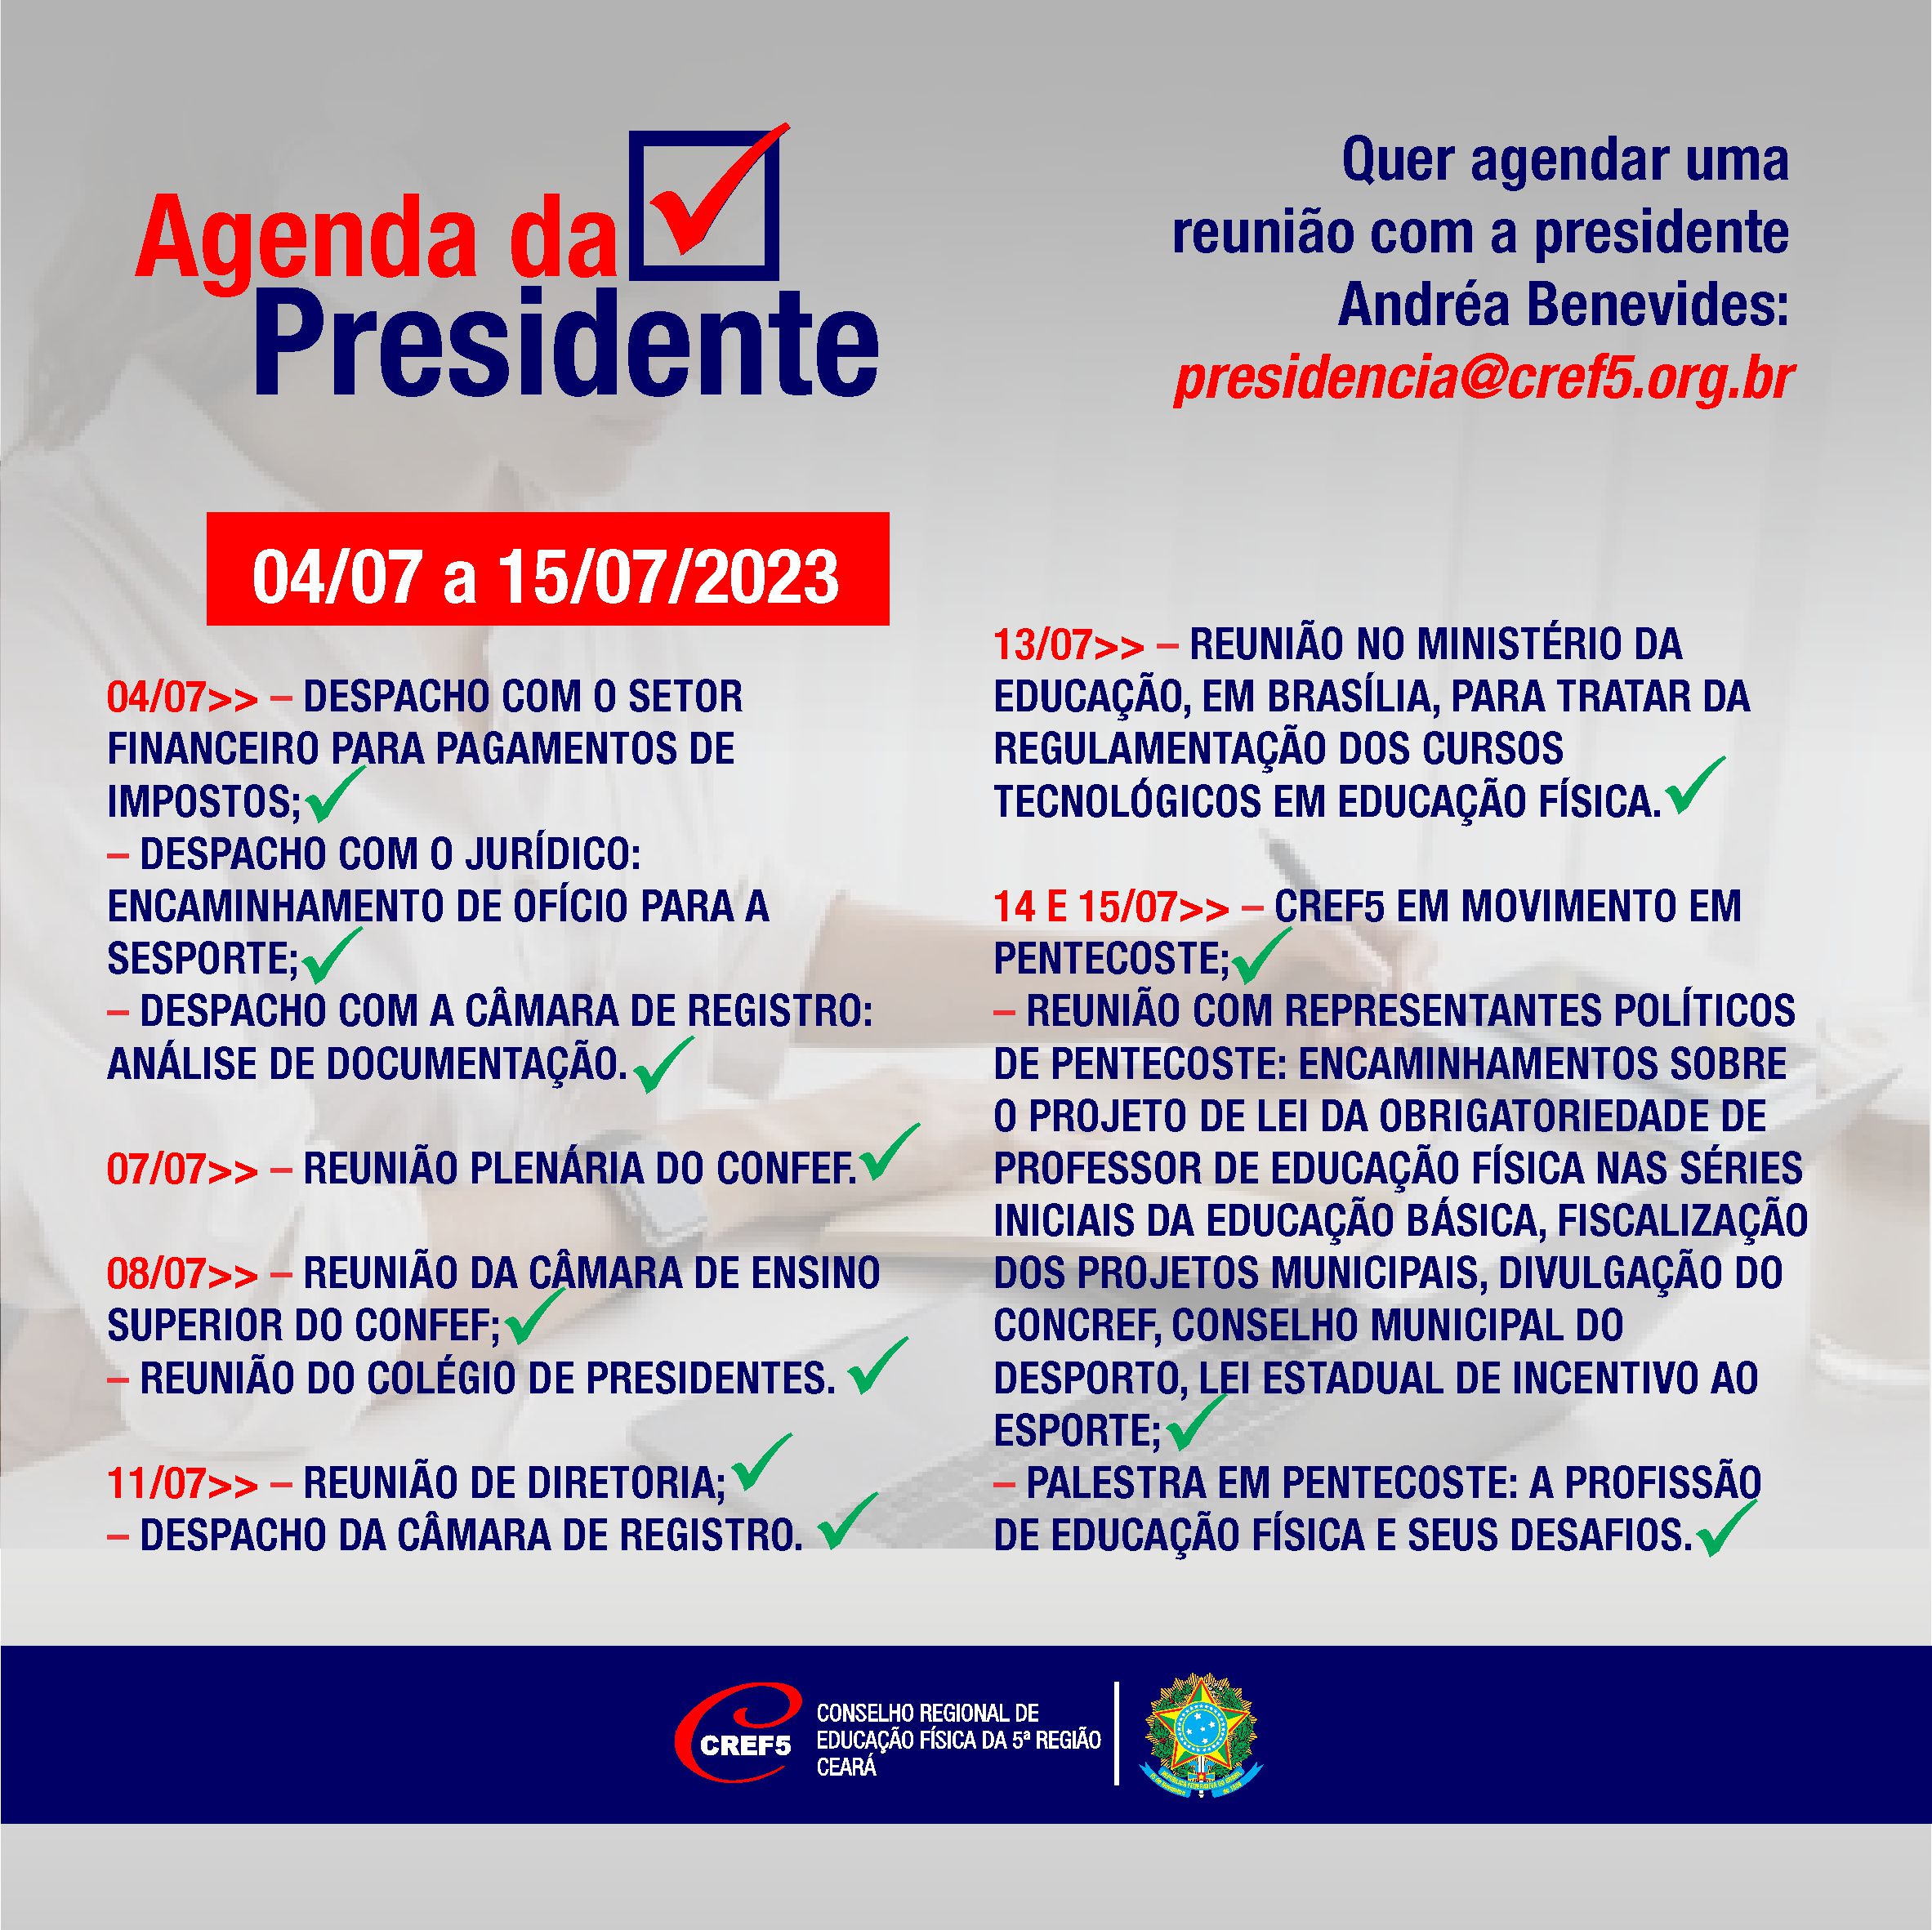 Agenda da presidente entre os dias 04 e 15/07/2023